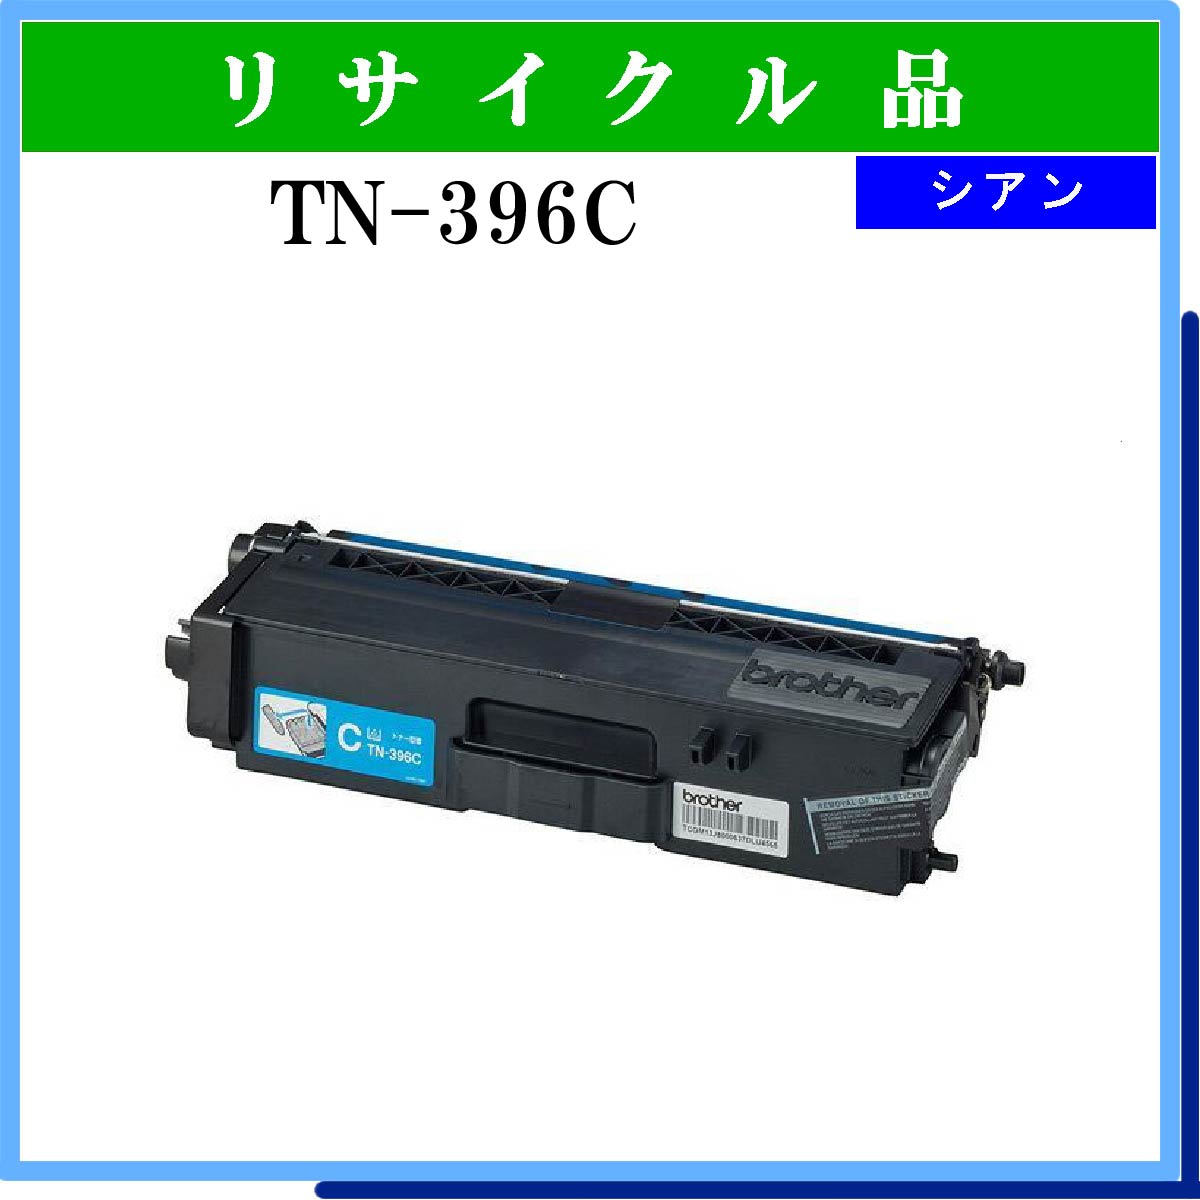 TN-396C